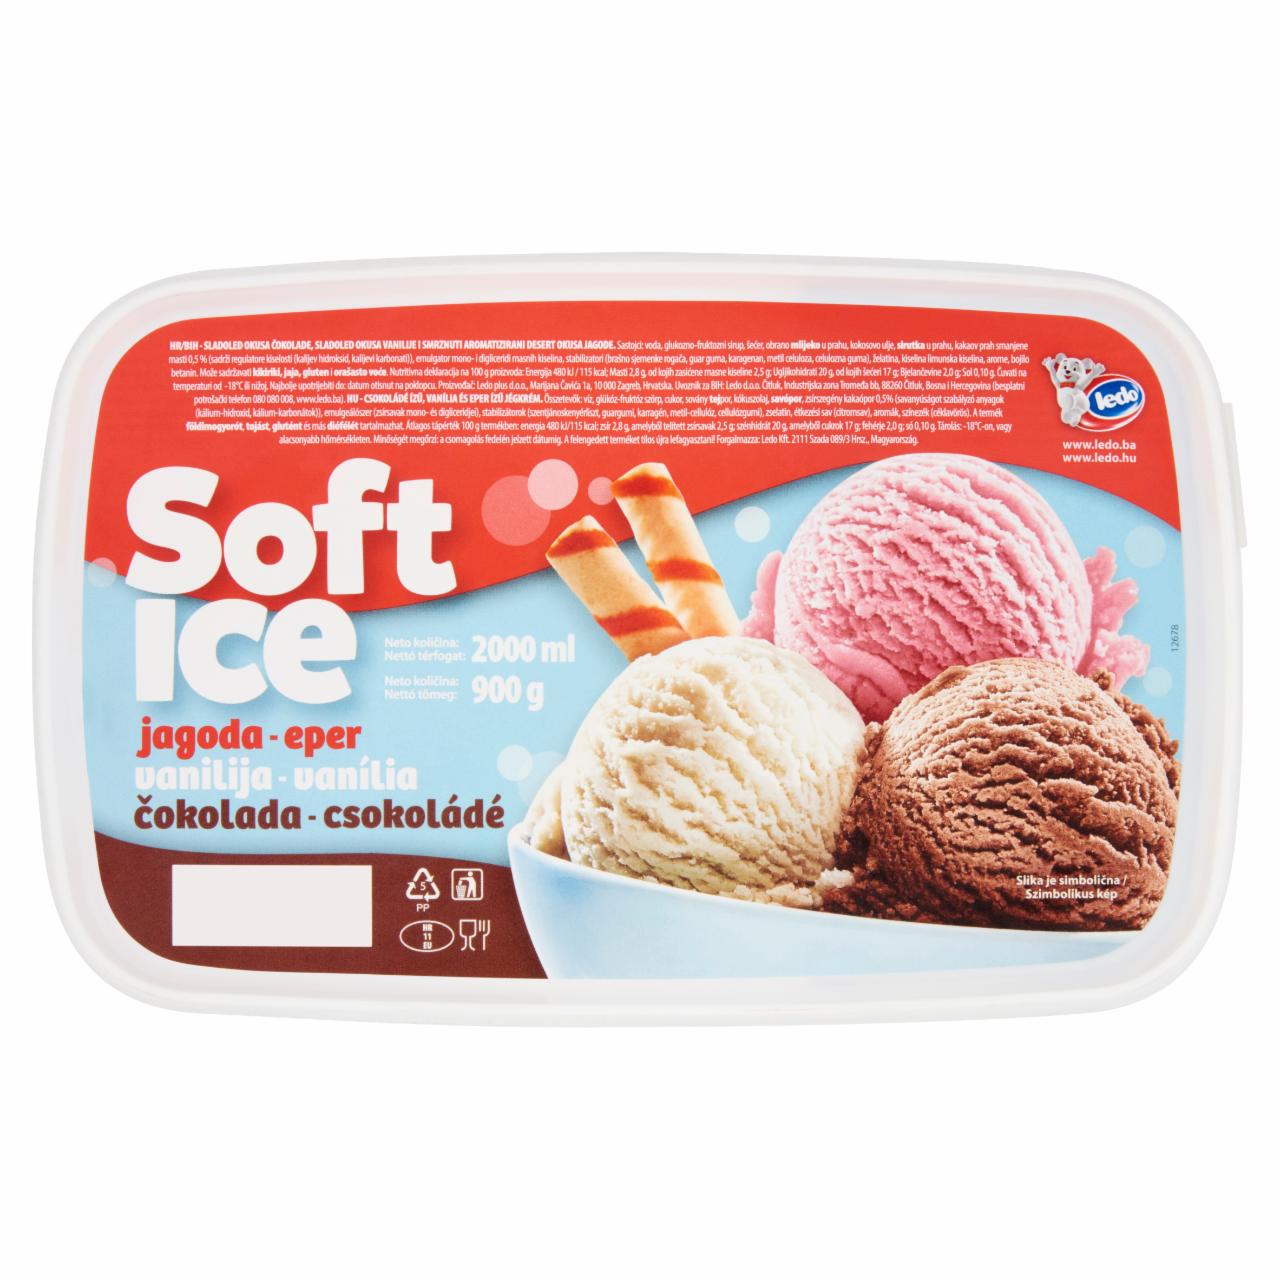 Képek - Ledo Soft Ice csokoládé, vanília és eper ízű jégkrém 2000 ml